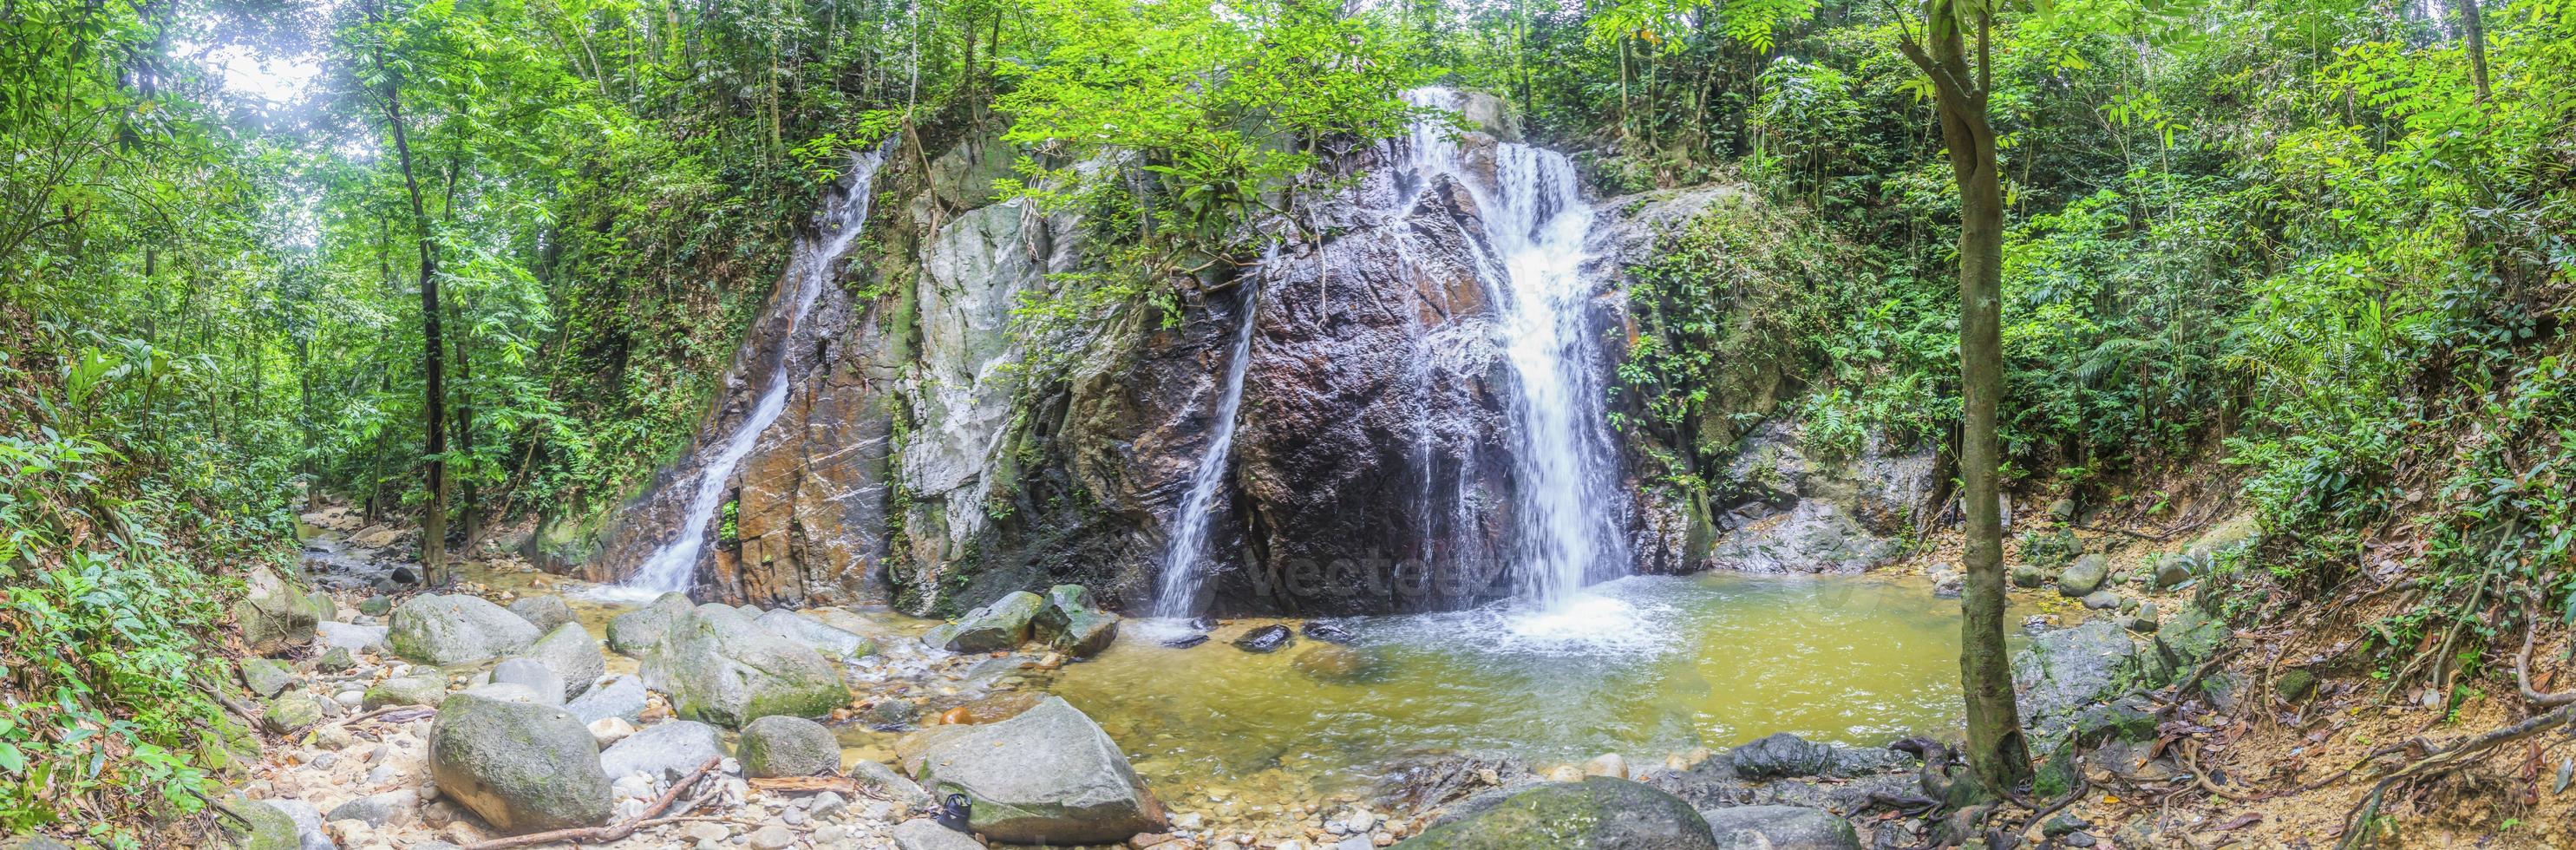 Wasserfall im Dschungel von Malaysia tagsüber foto